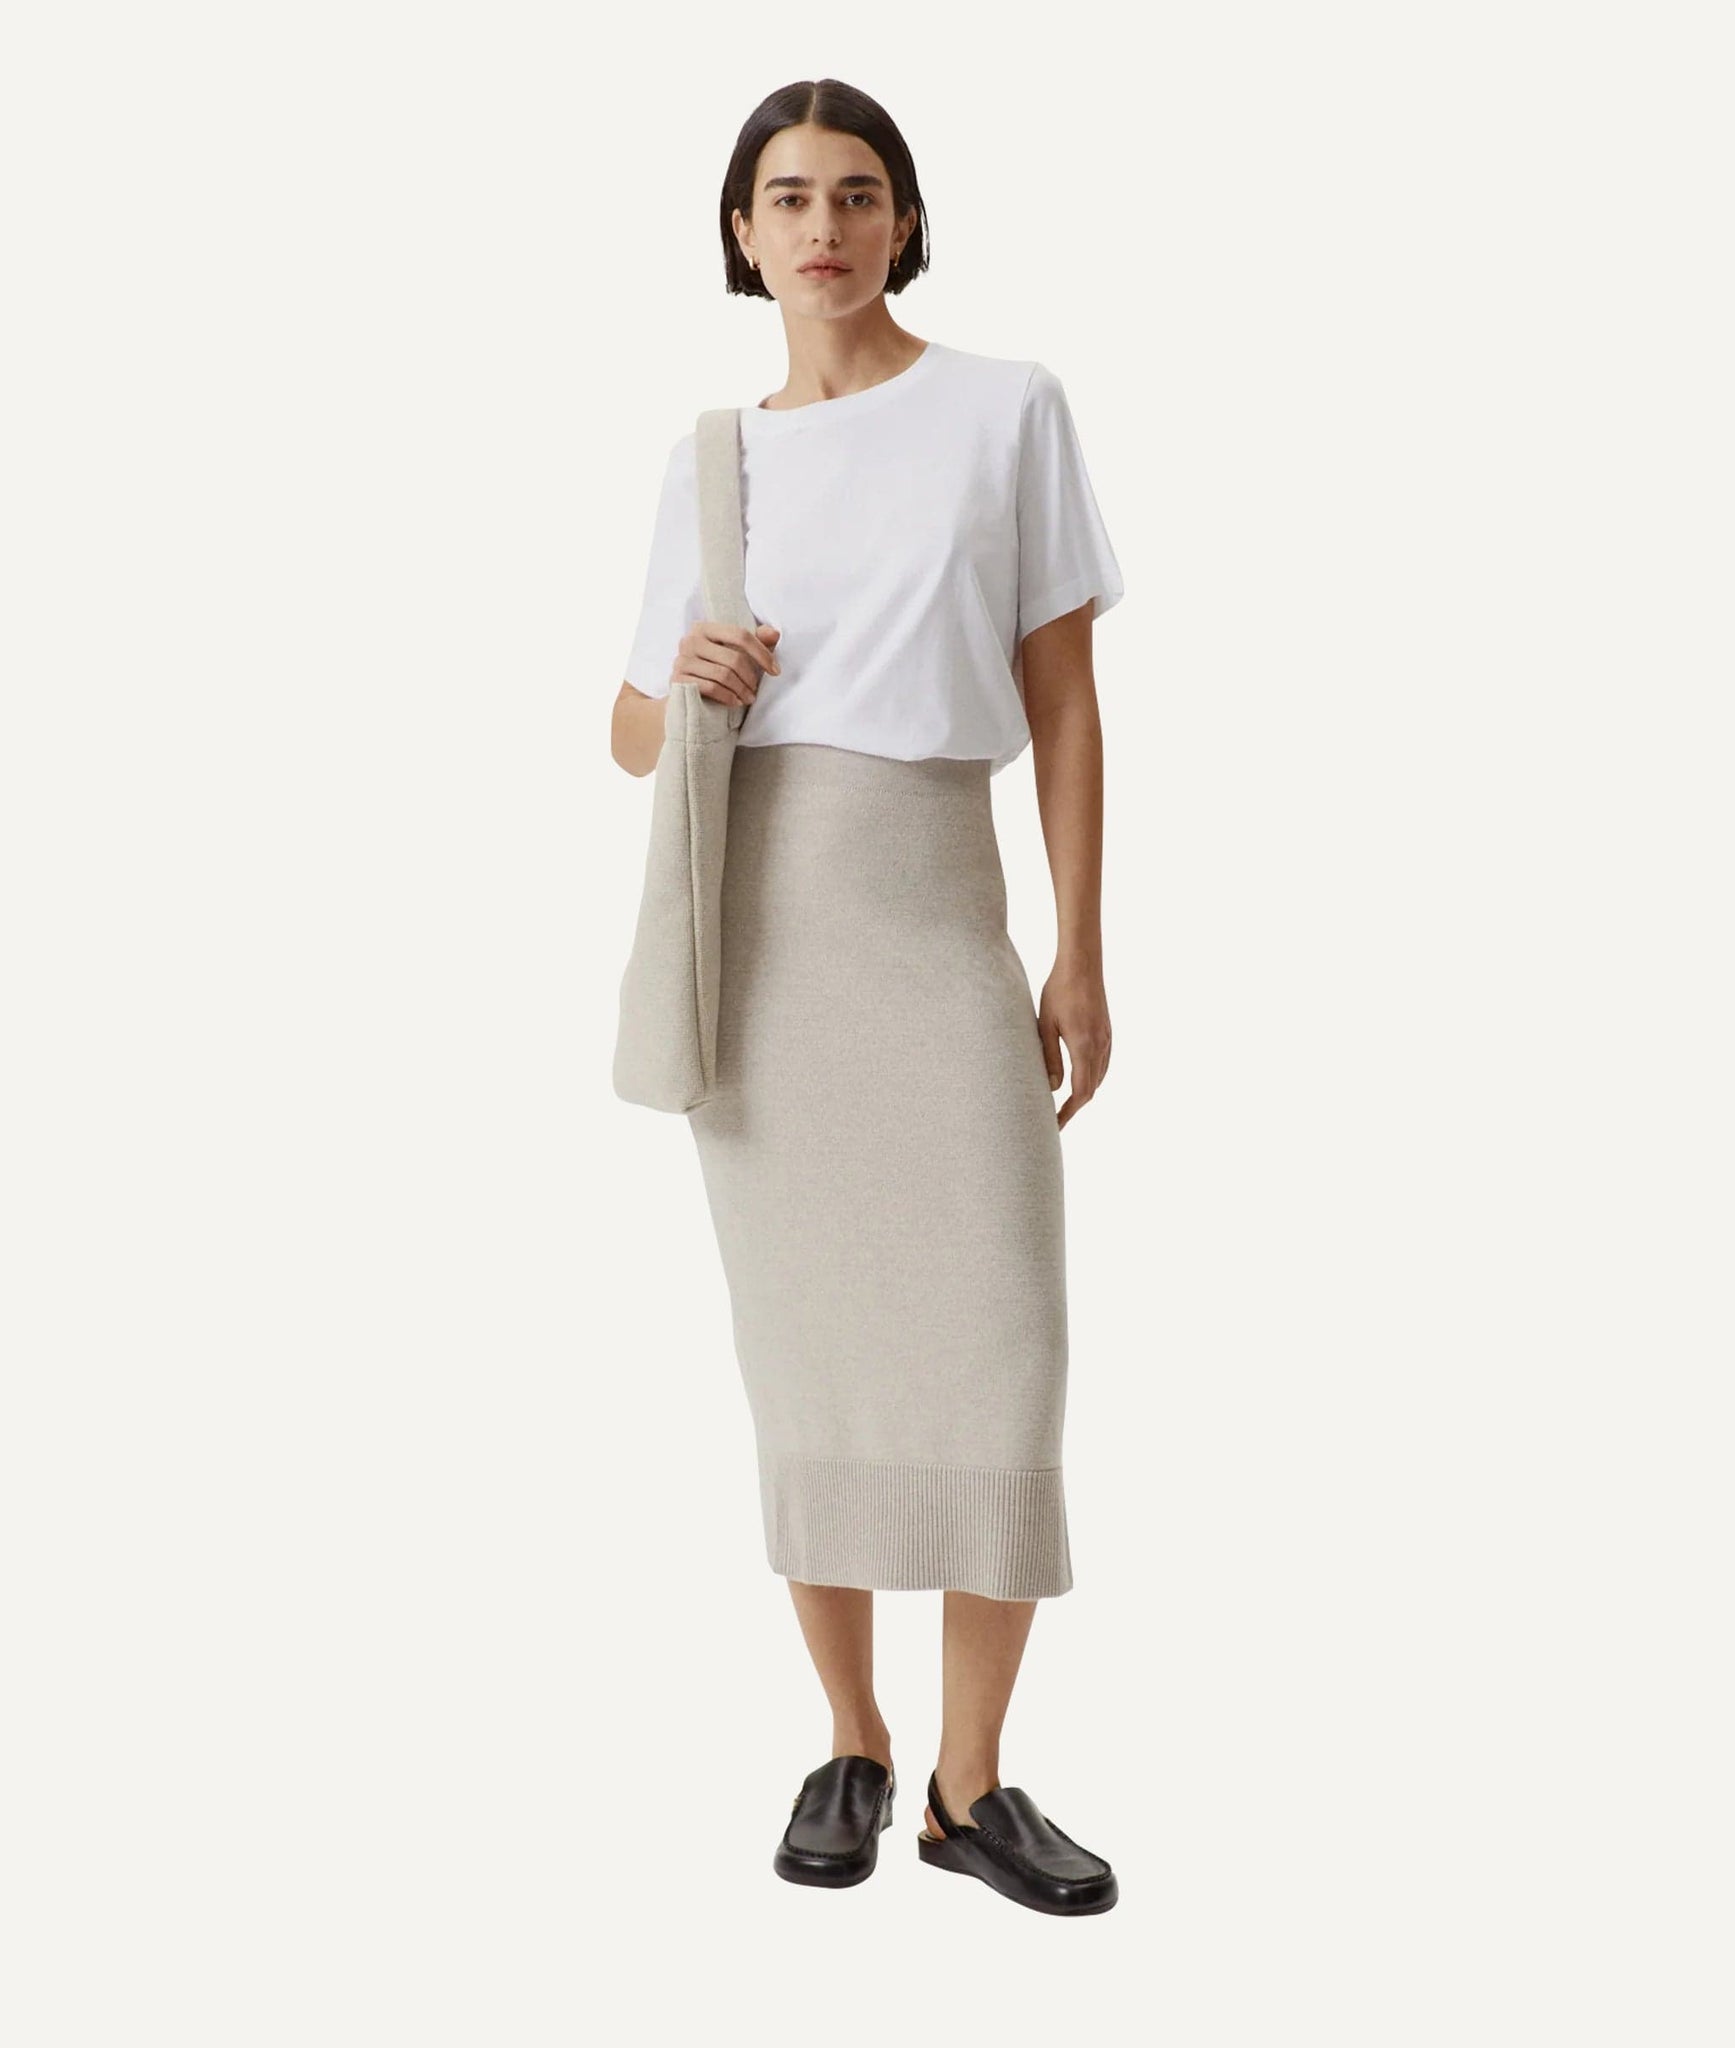 The Merino Wool Pencil Skirt